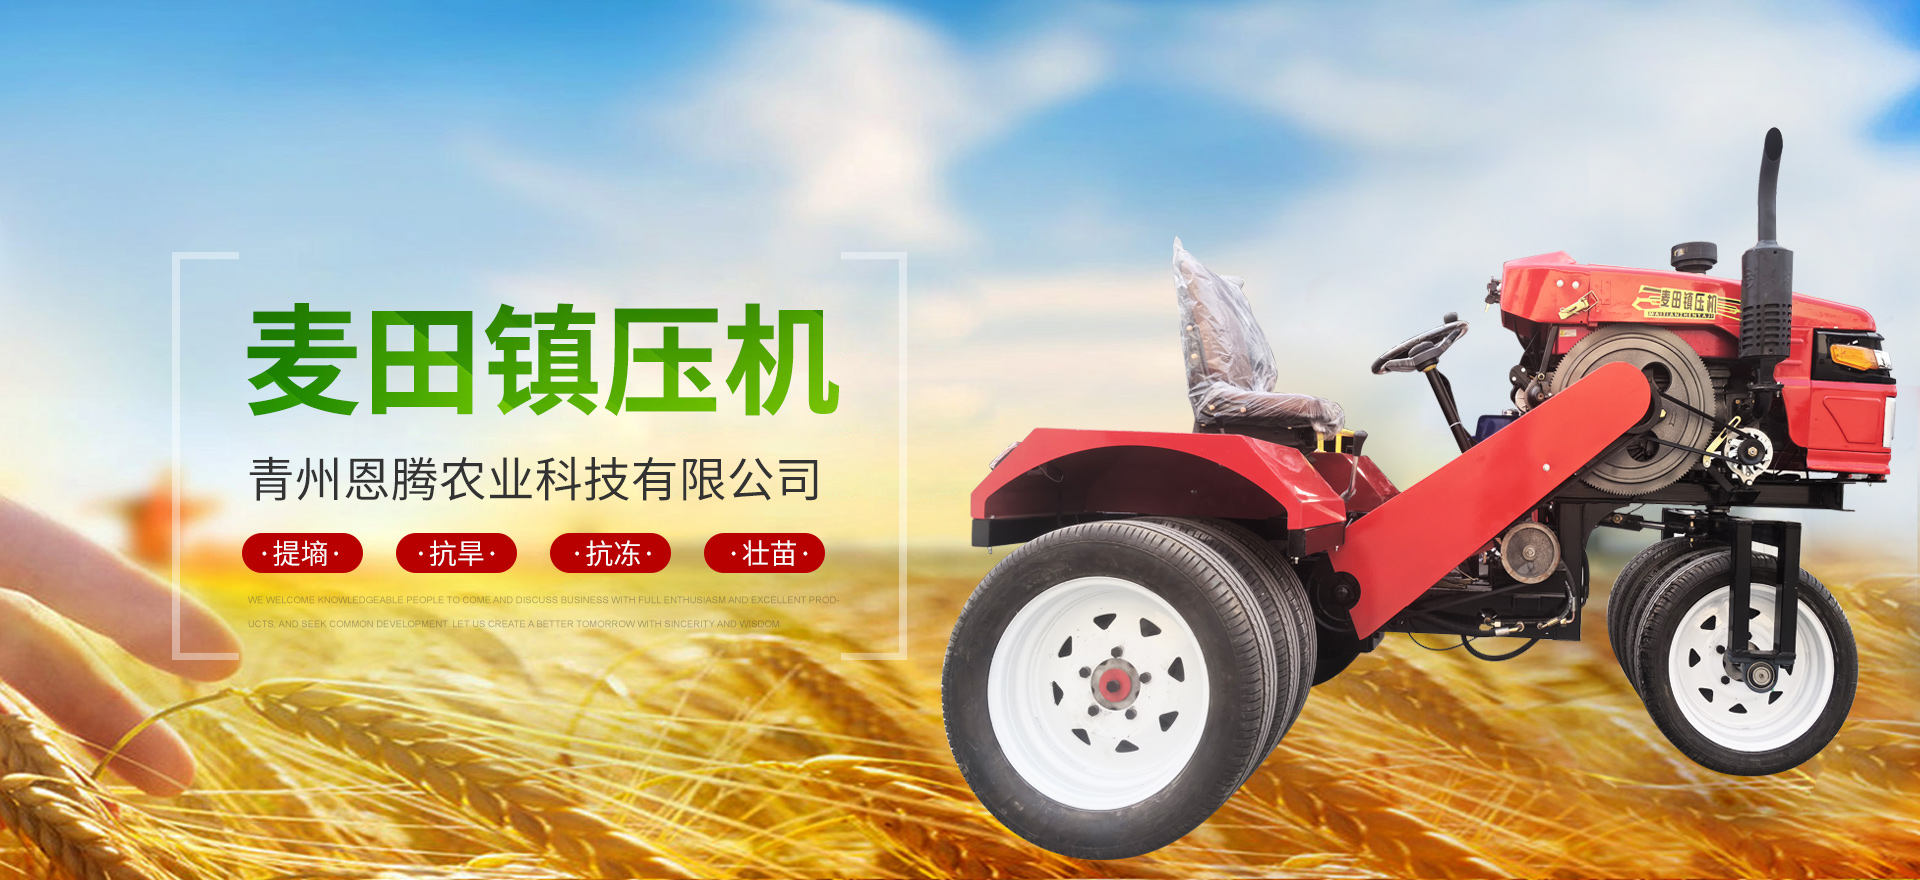 青州恩腾农业科技有限公司